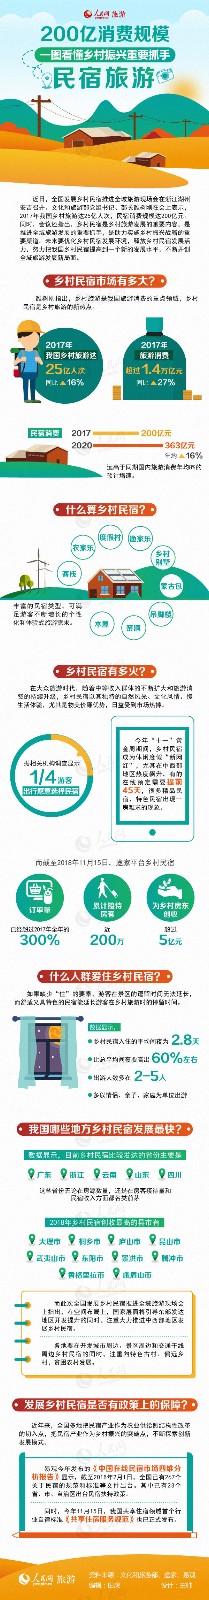 200亿消费规模 一图看懂乡村振兴重要抓手-中国网地产